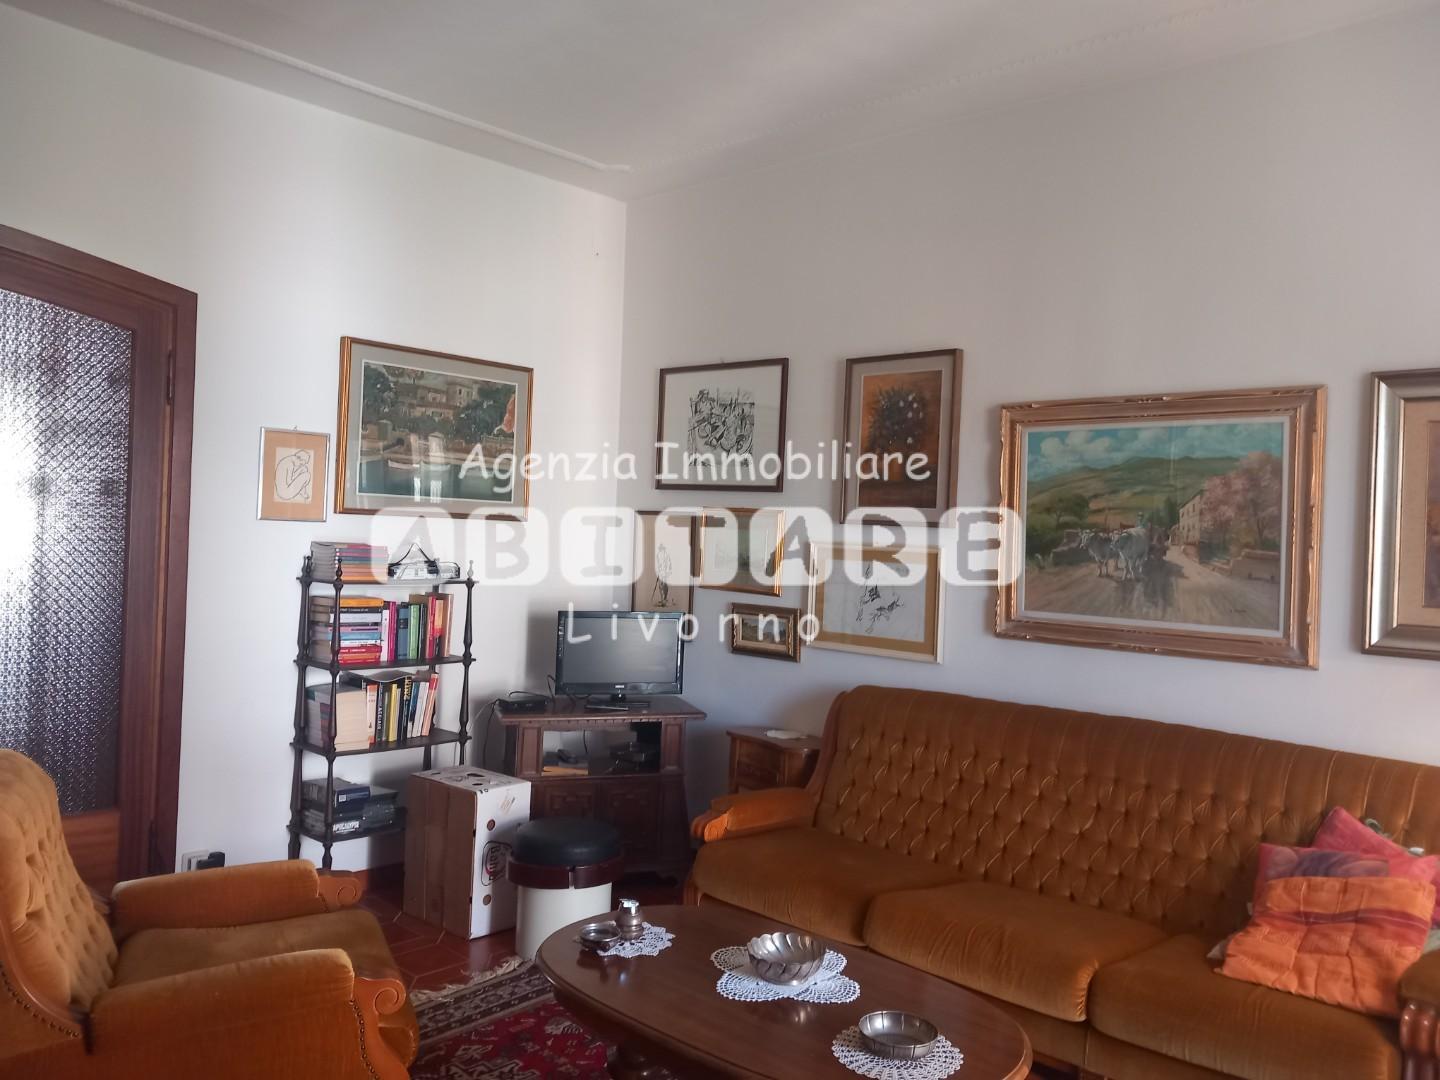 Appartamento in vendita a Rosignano Marittimo, 5 locali, prezzo € 145.000 | PortaleAgenzieImmobiliari.it